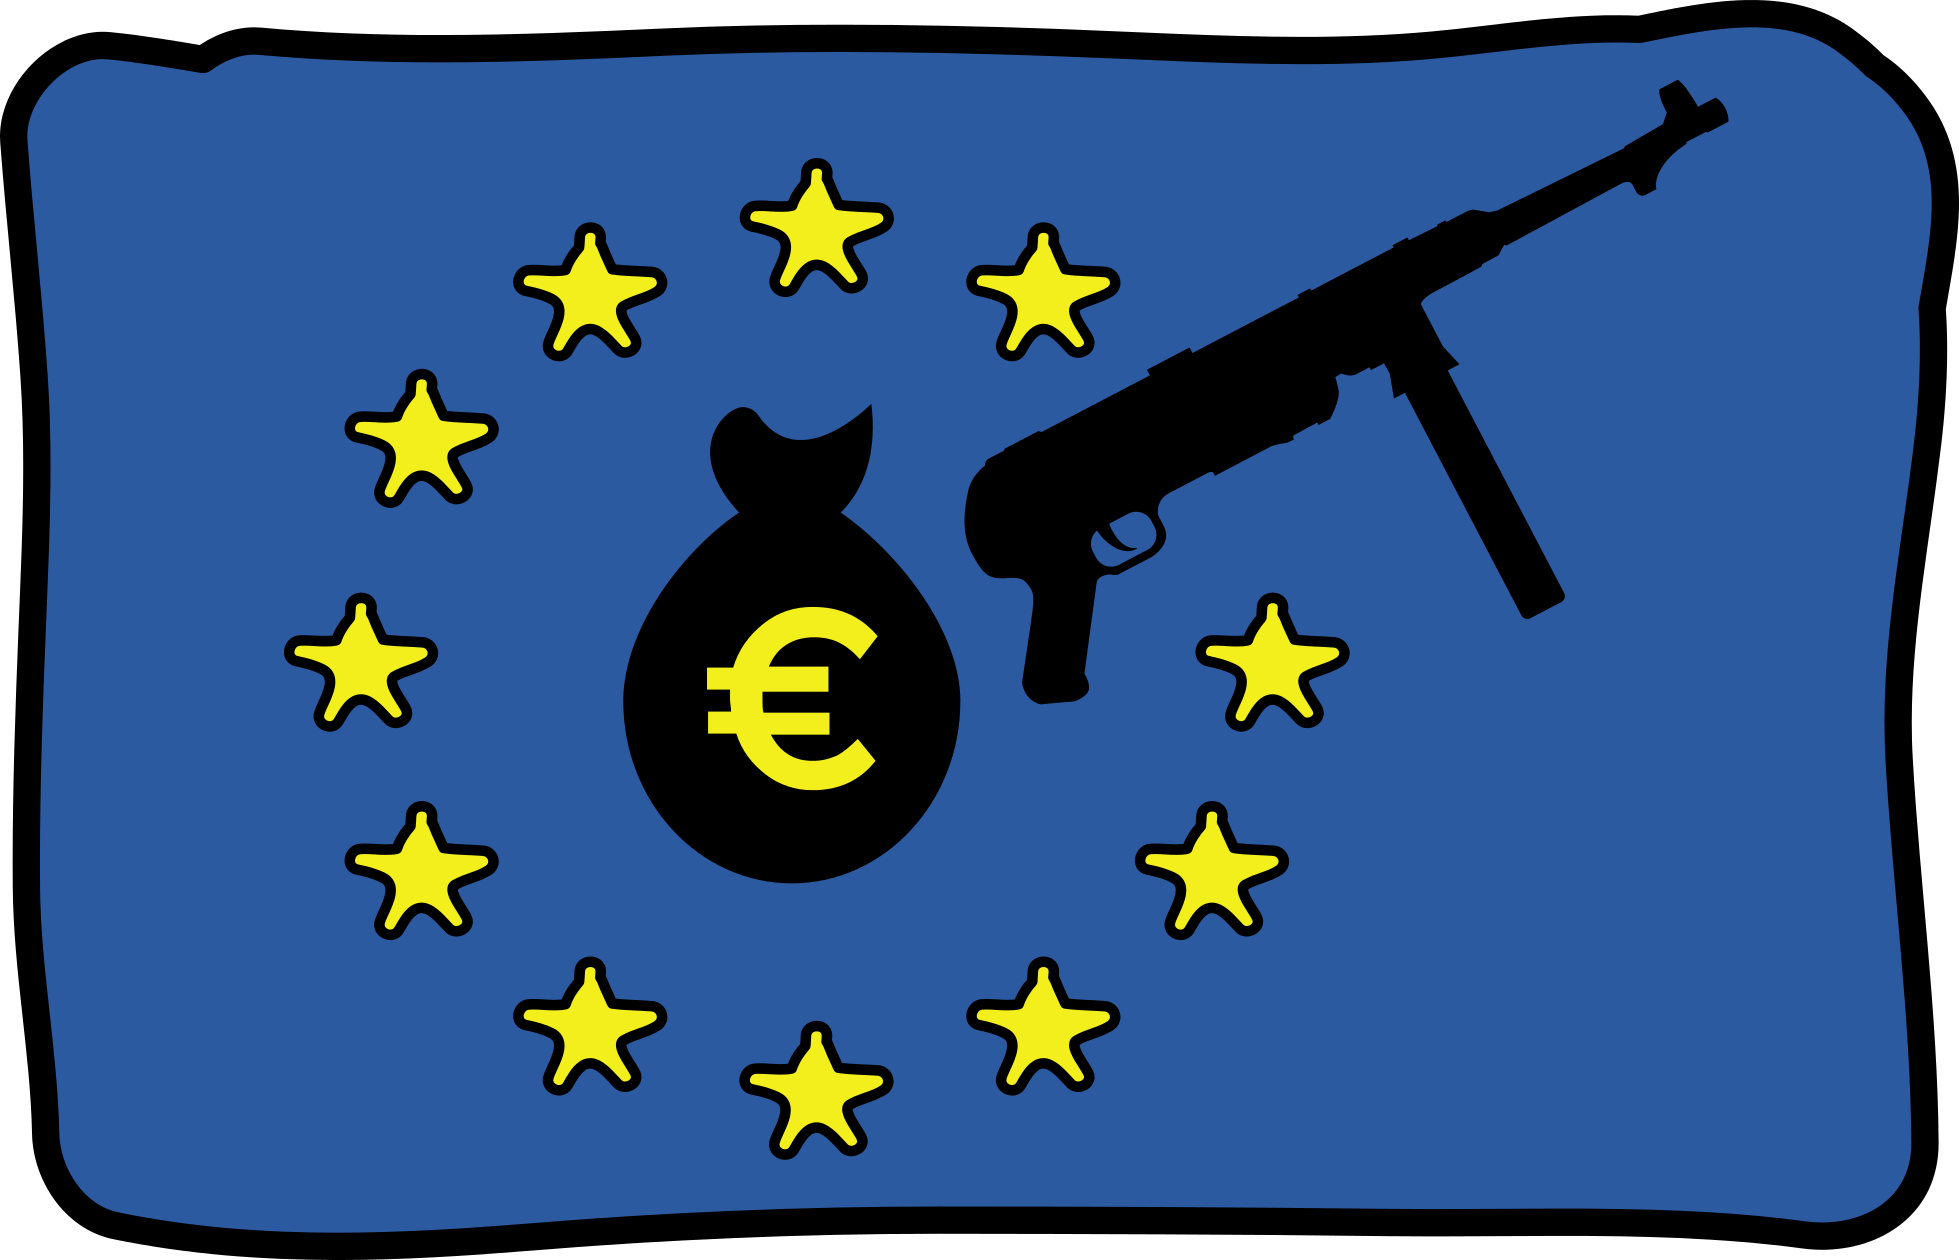 anti-militarist EU flag symbol